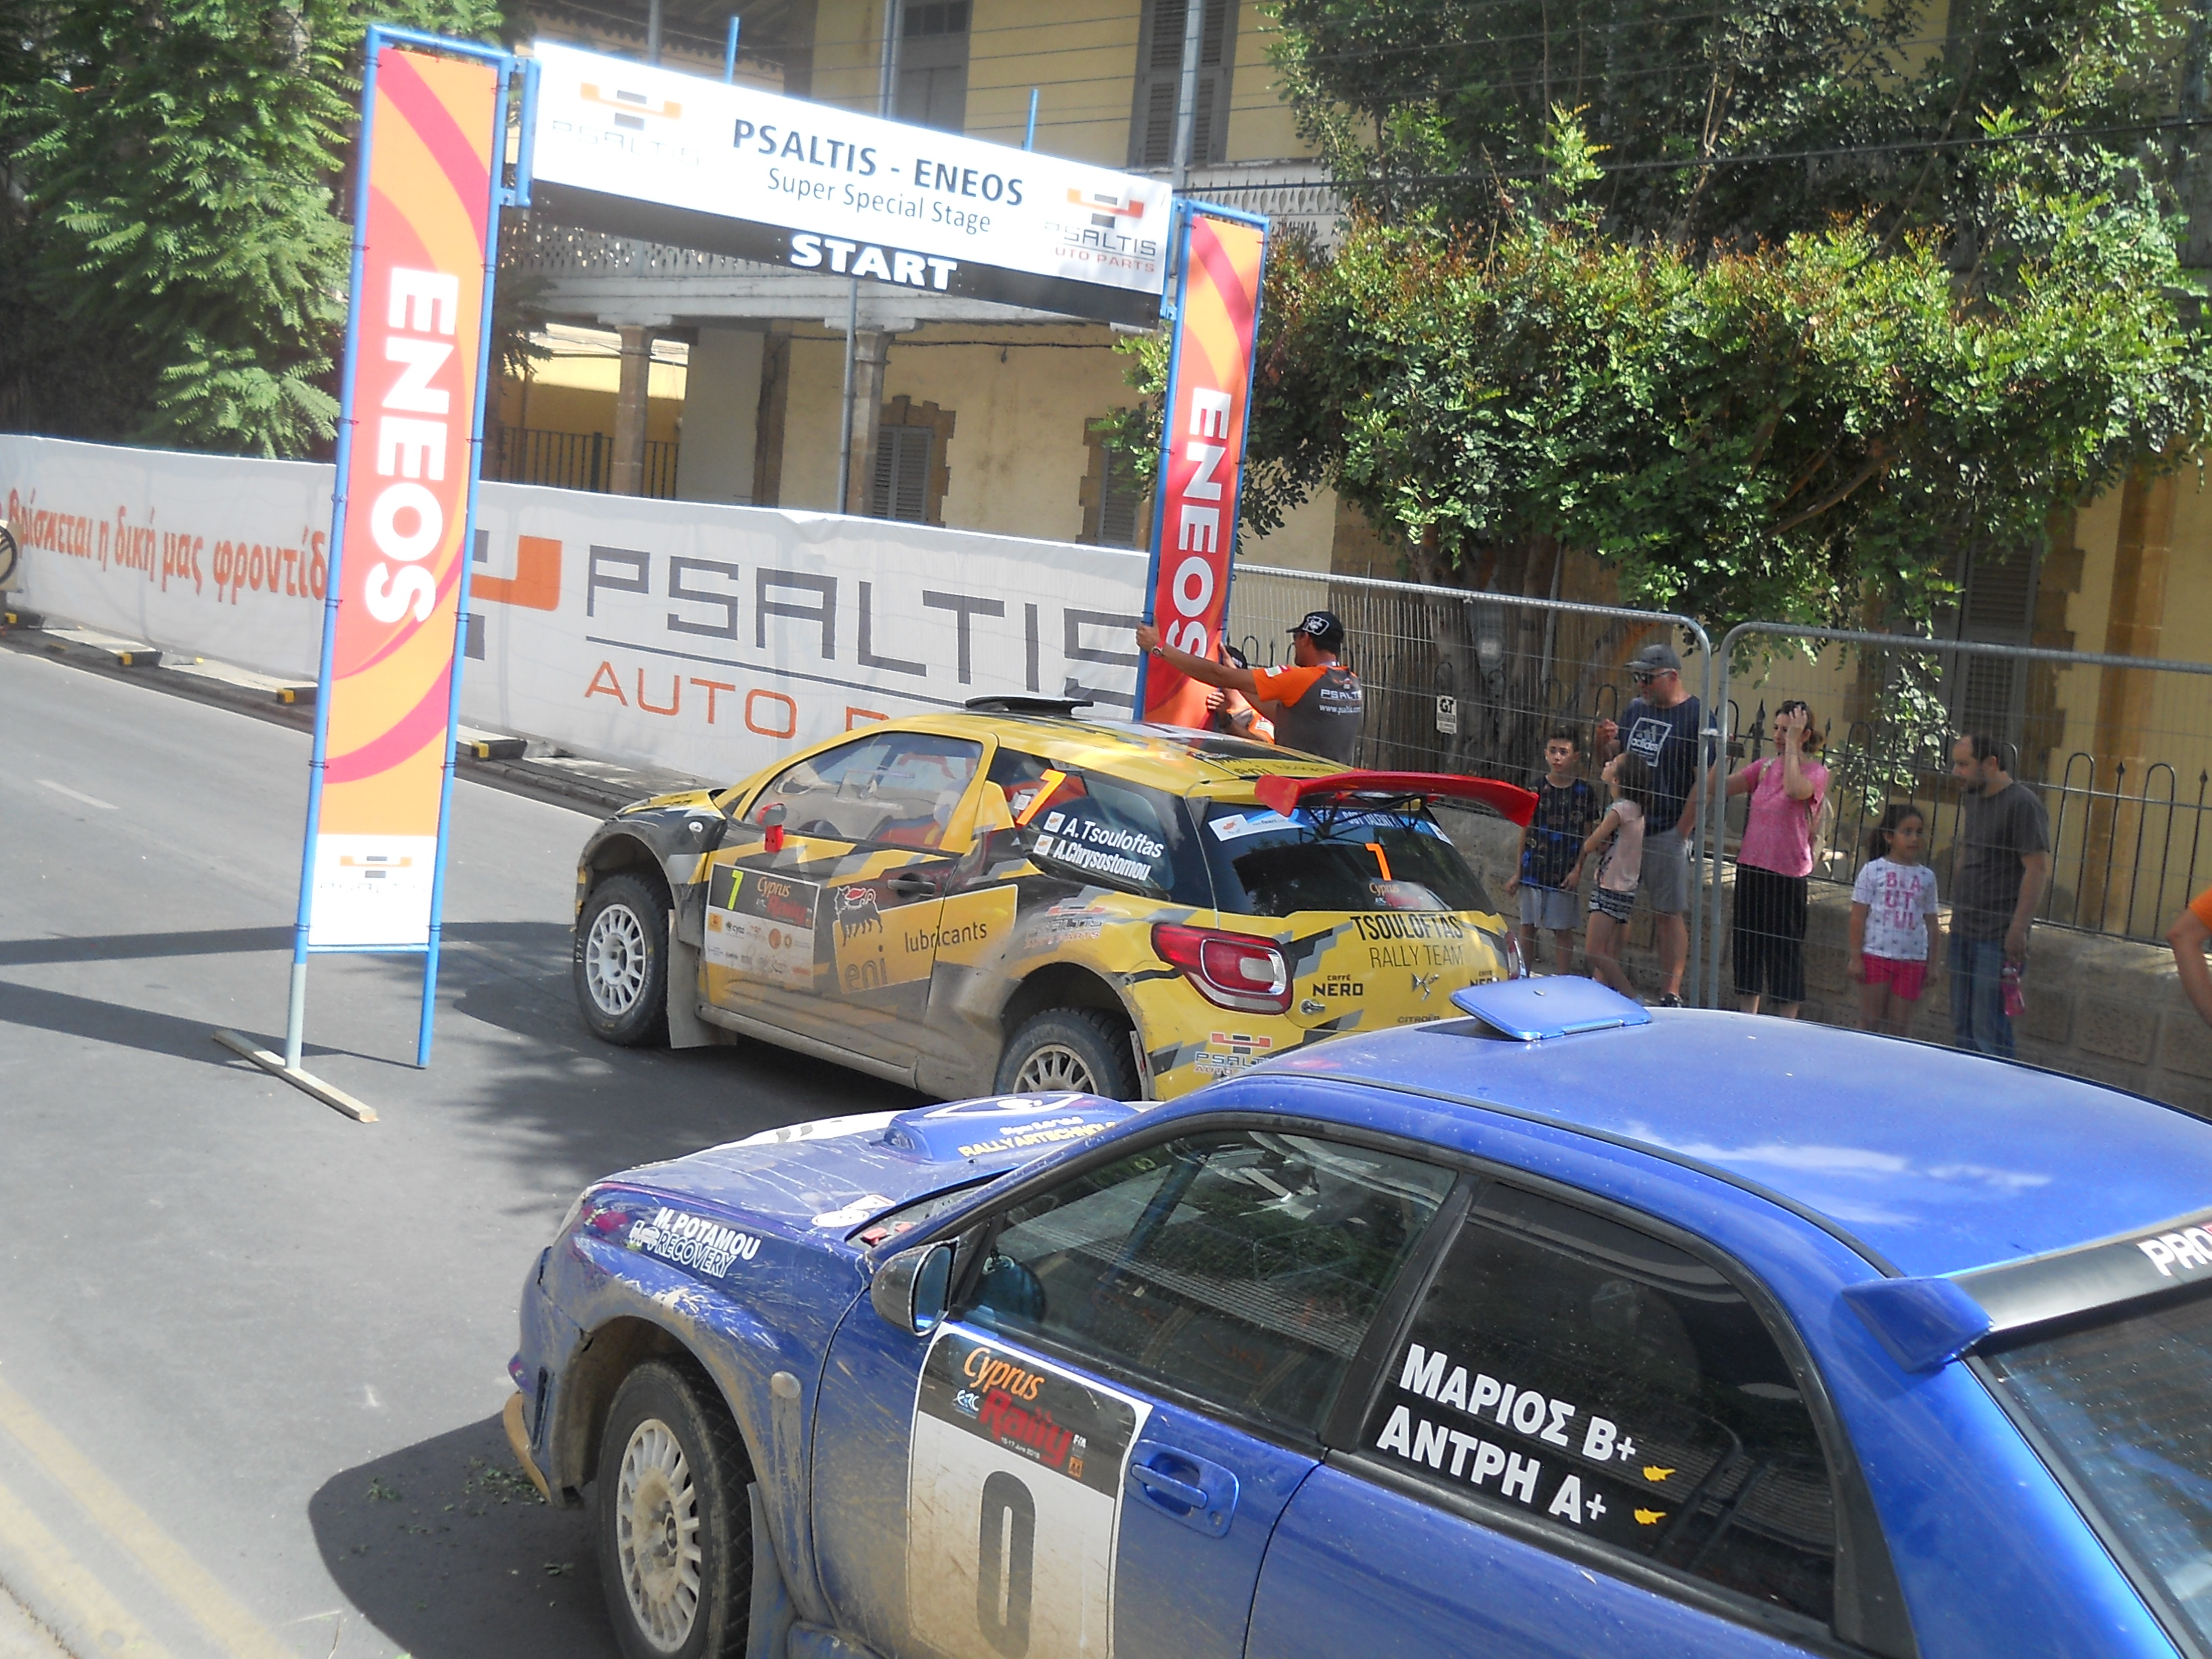 Cyprus Rally 2018 в Никосии! Фото-обзор с мероприятия.: фото 6